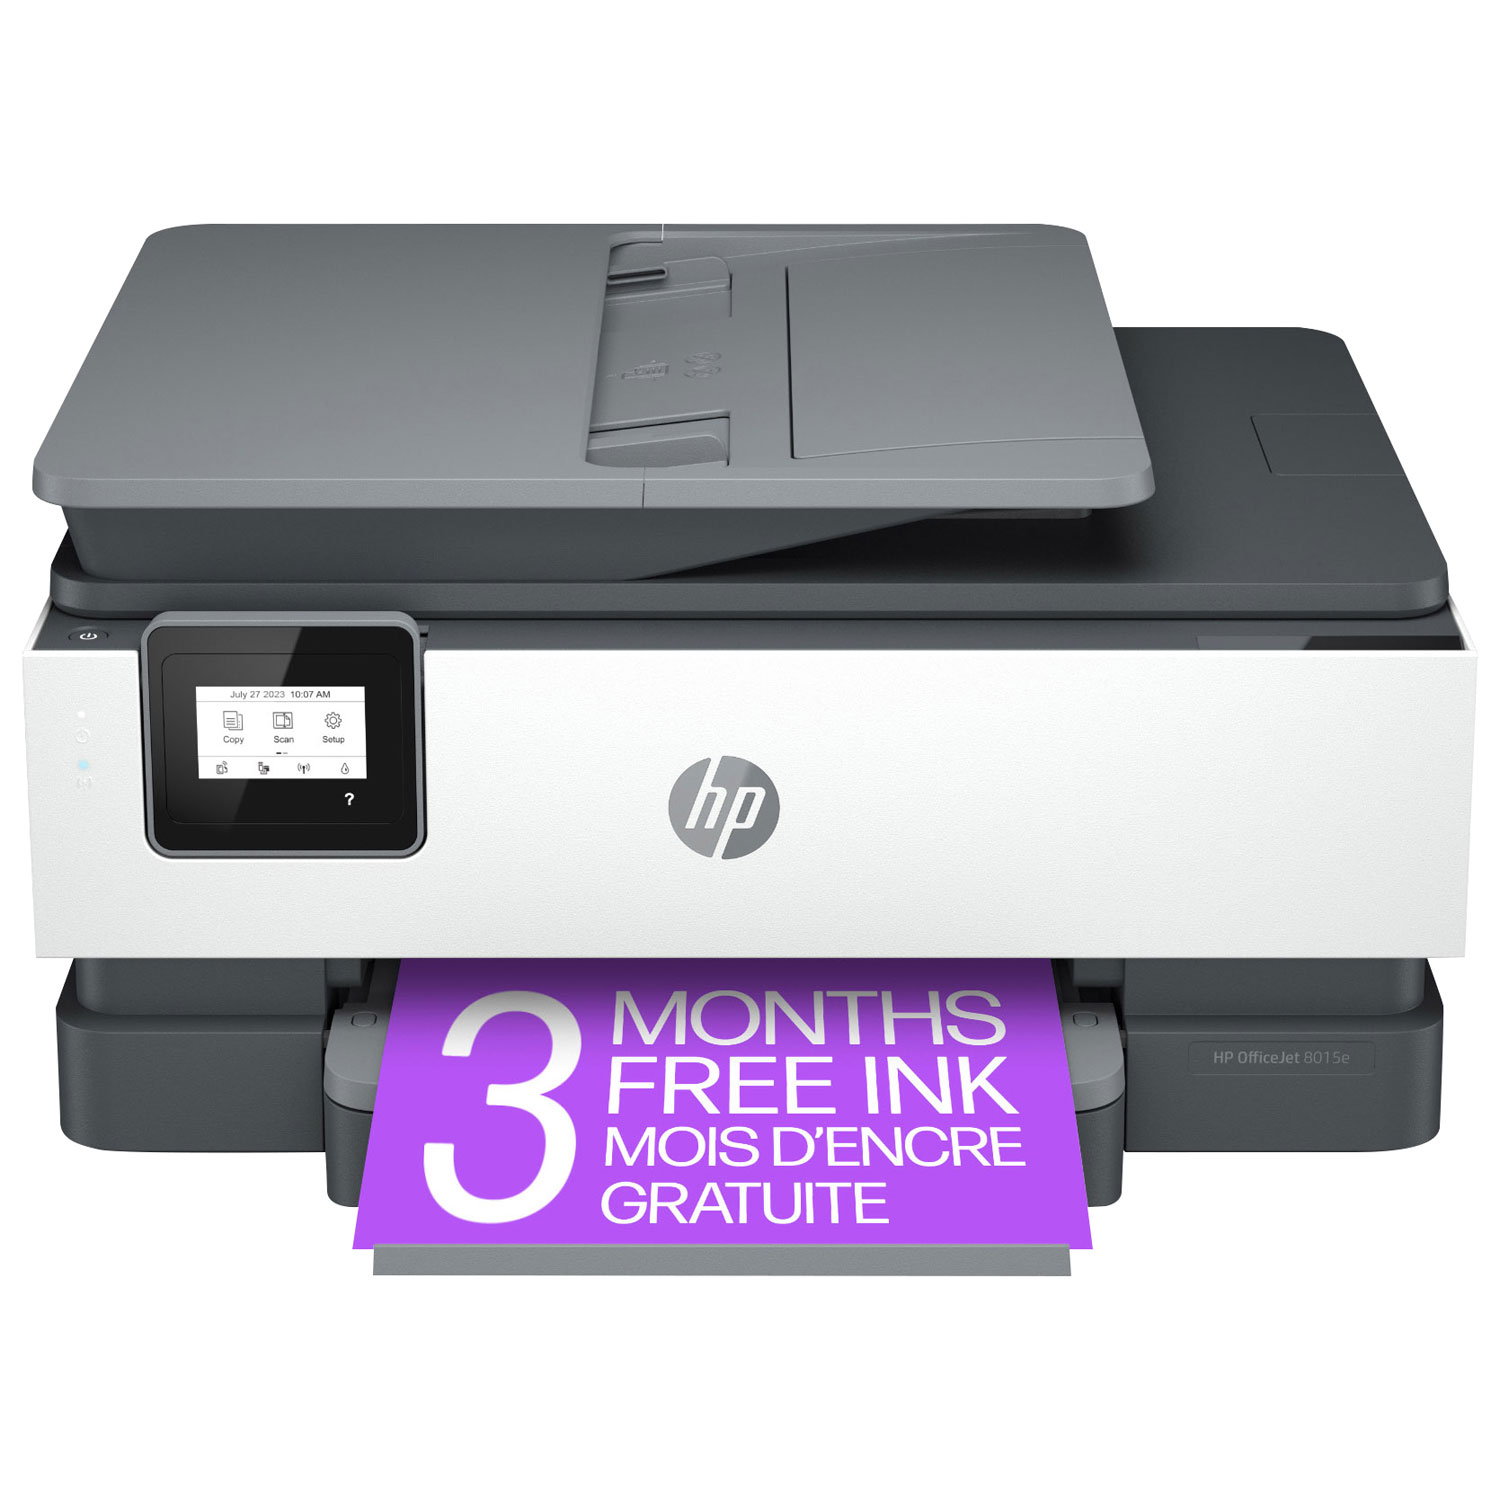 HP OfficeJet 8015e Wireless All-In-One Inkjet Printer